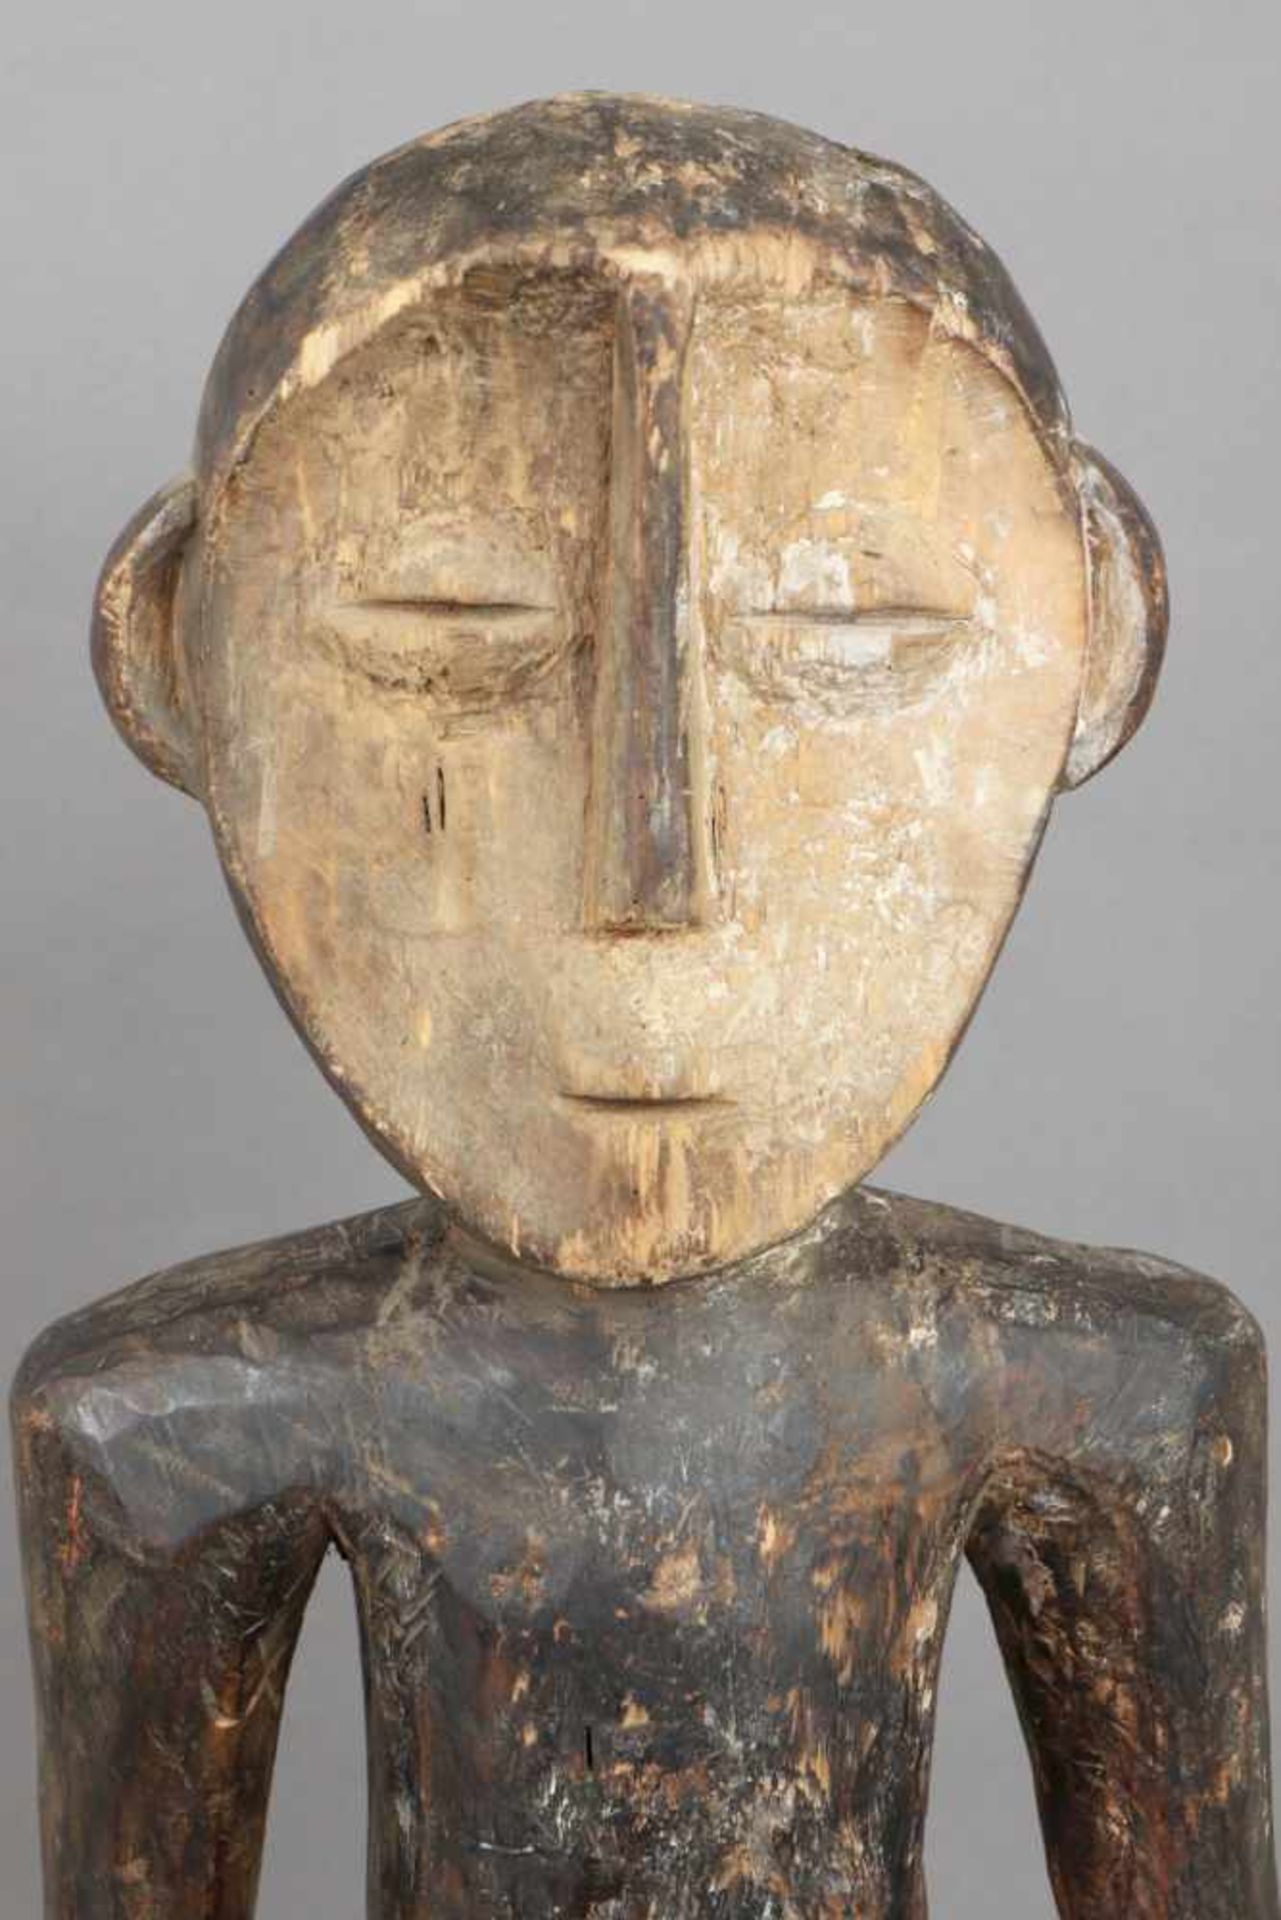 Afrikanische Ahnenfigur Holz, geschnitzt, geschwärzt und im Gesicht weiß gekalkt (Kaolin), wohl - Bild 3 aus 4